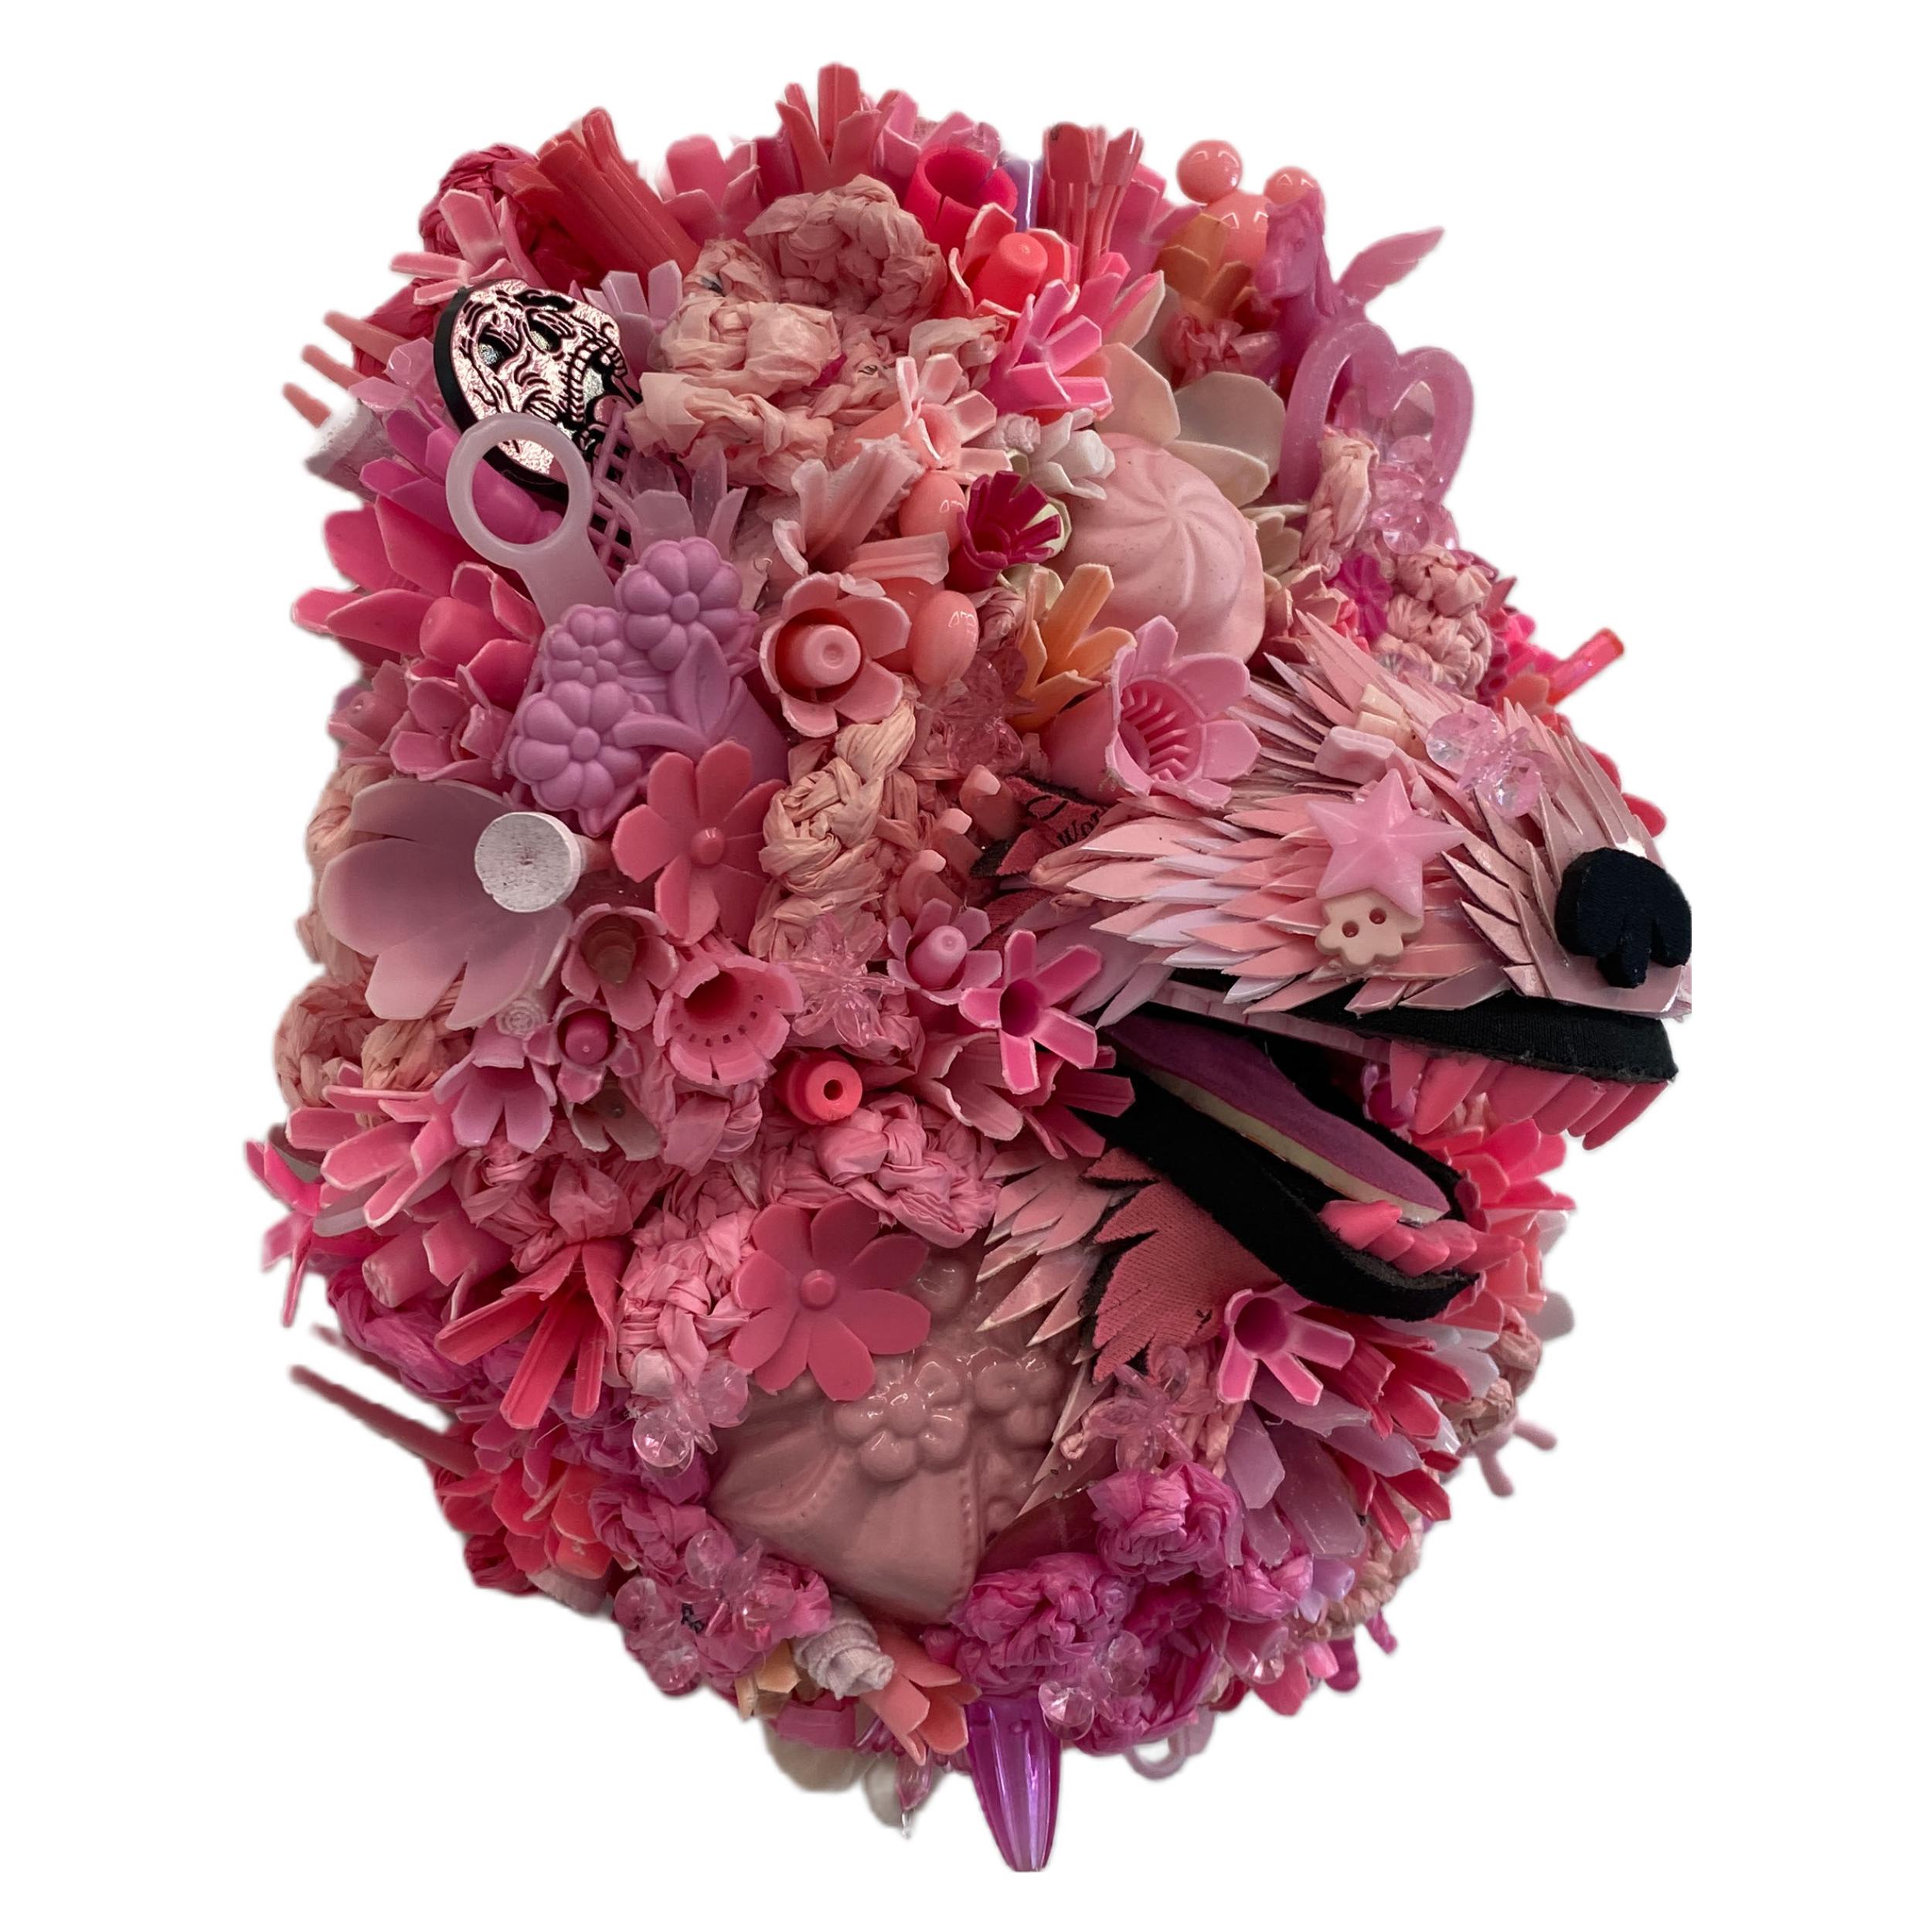 Hydrangea-Hunde, Blush, zeitgenössische Tierskulptur, recycelte Materialien  (Zeitgenössisch), Sculpture, von Calder Kamin